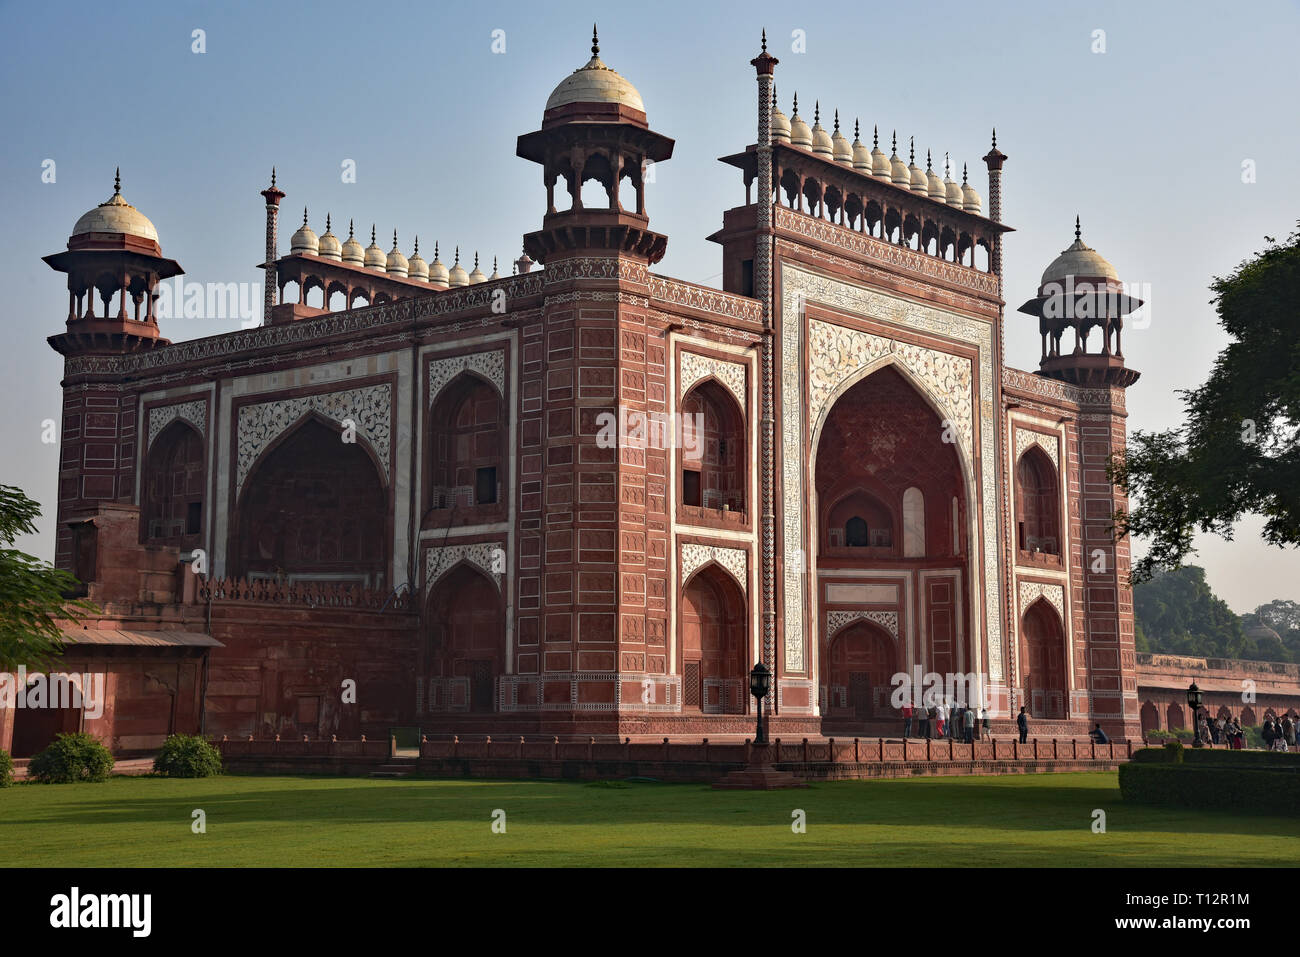 La porte principale (Darwaza-i-rauza) au Taj Mahal. Marbre blanc et de pierres posées dans le grès rouge forme ce "grand portail". Agra, Inde. Banque D'Images